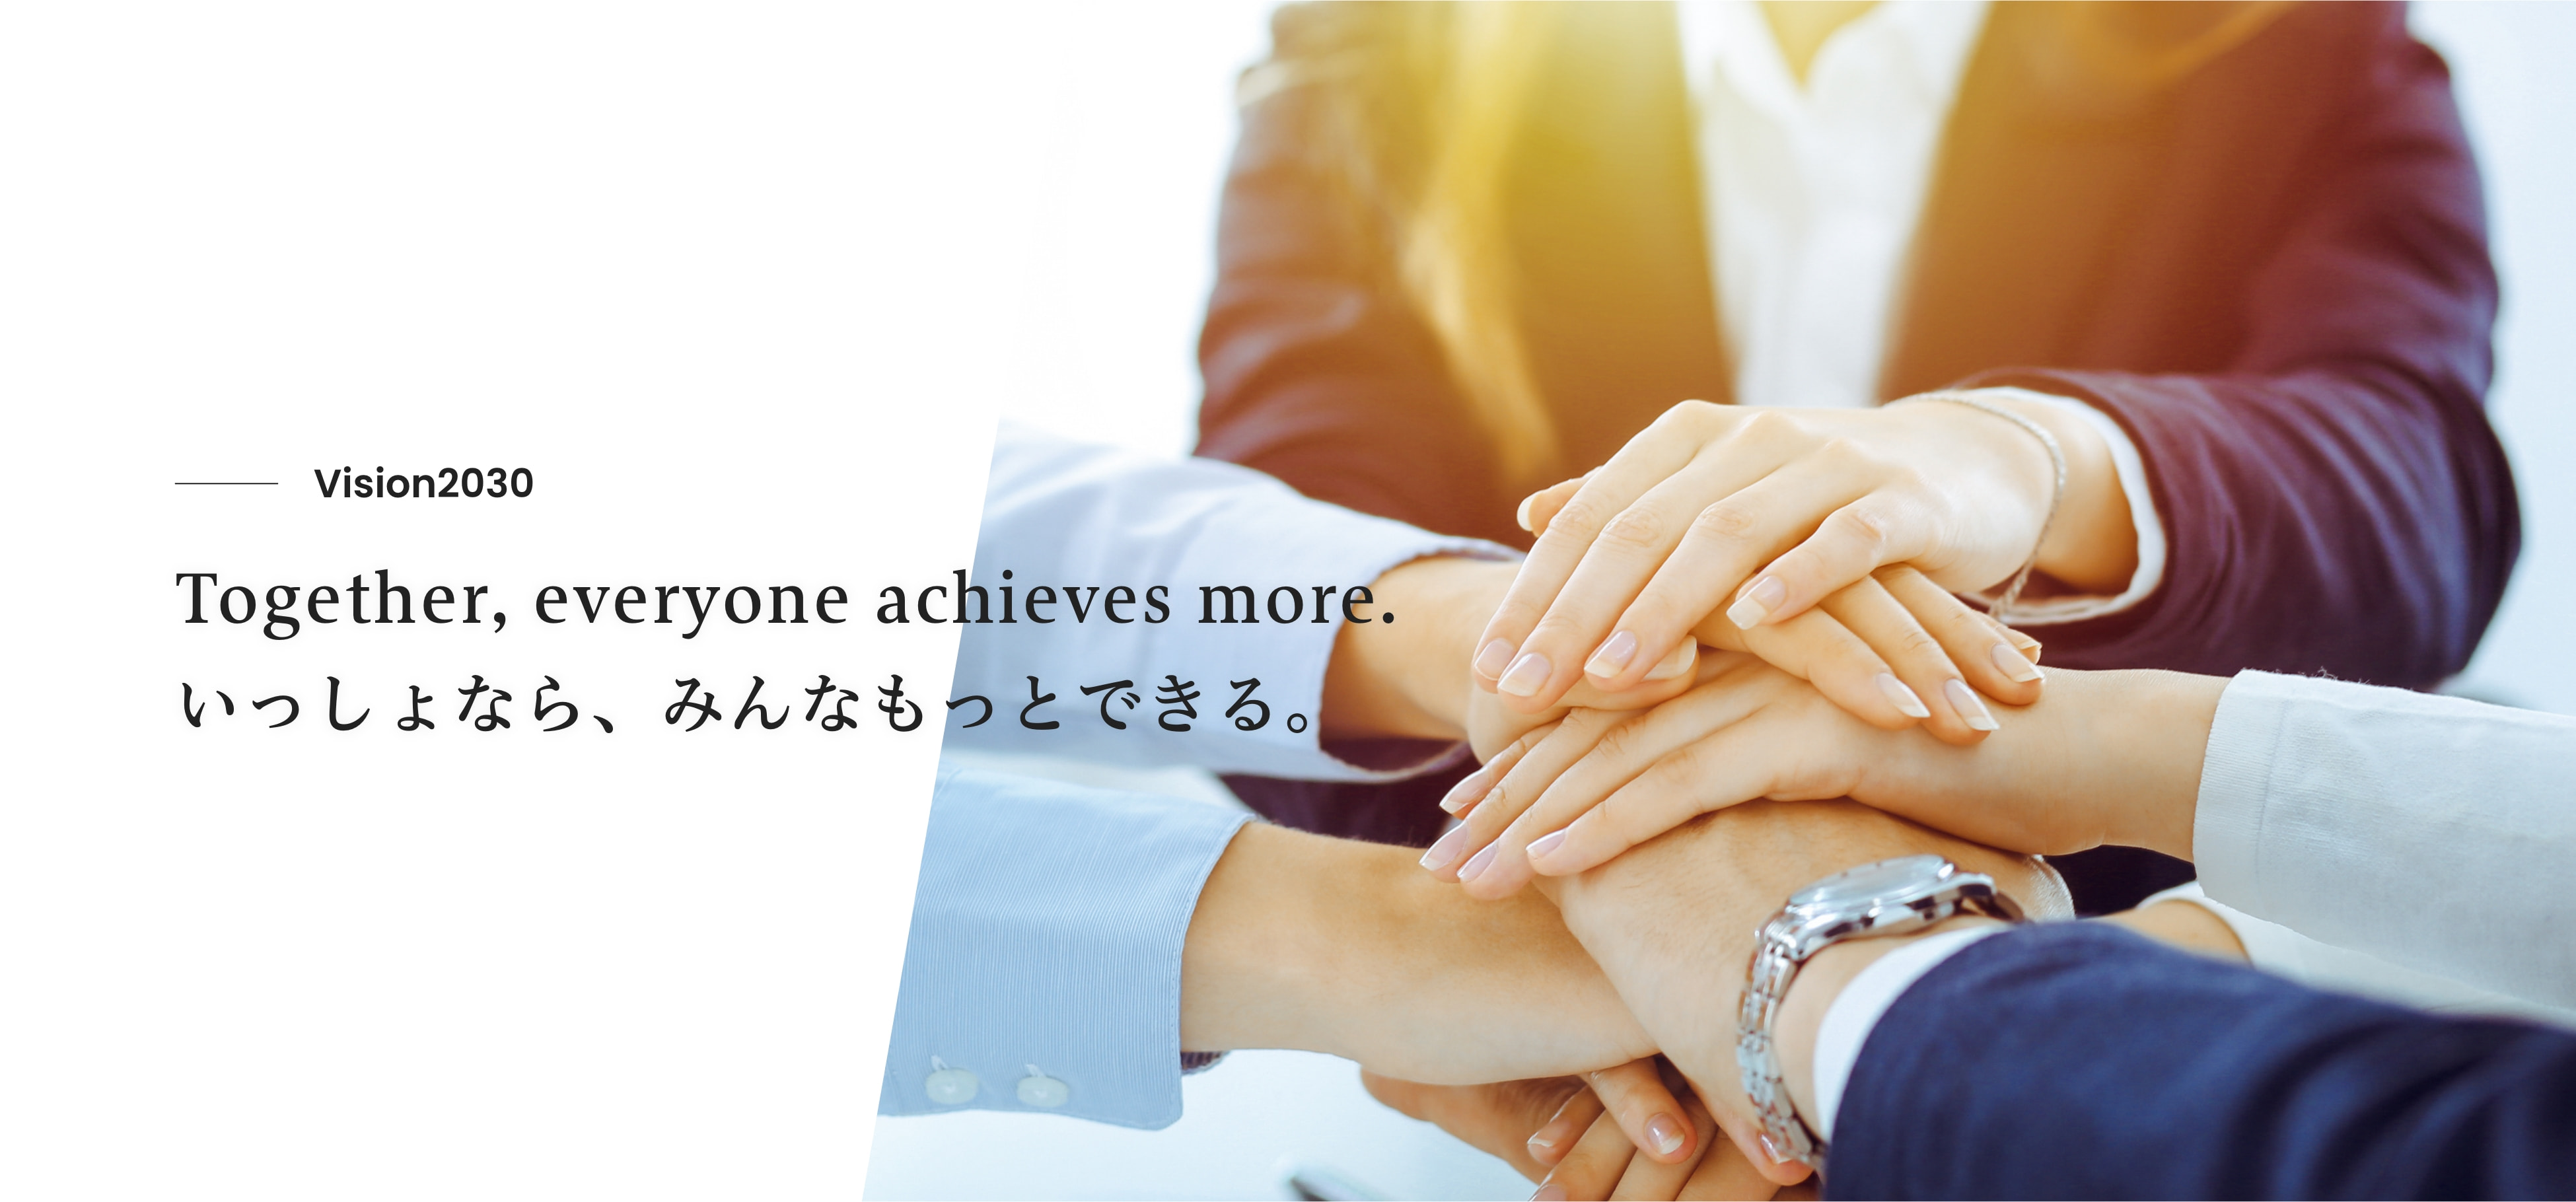 Together, everyone achieves more. いっしょなら、みんなもっとできる。